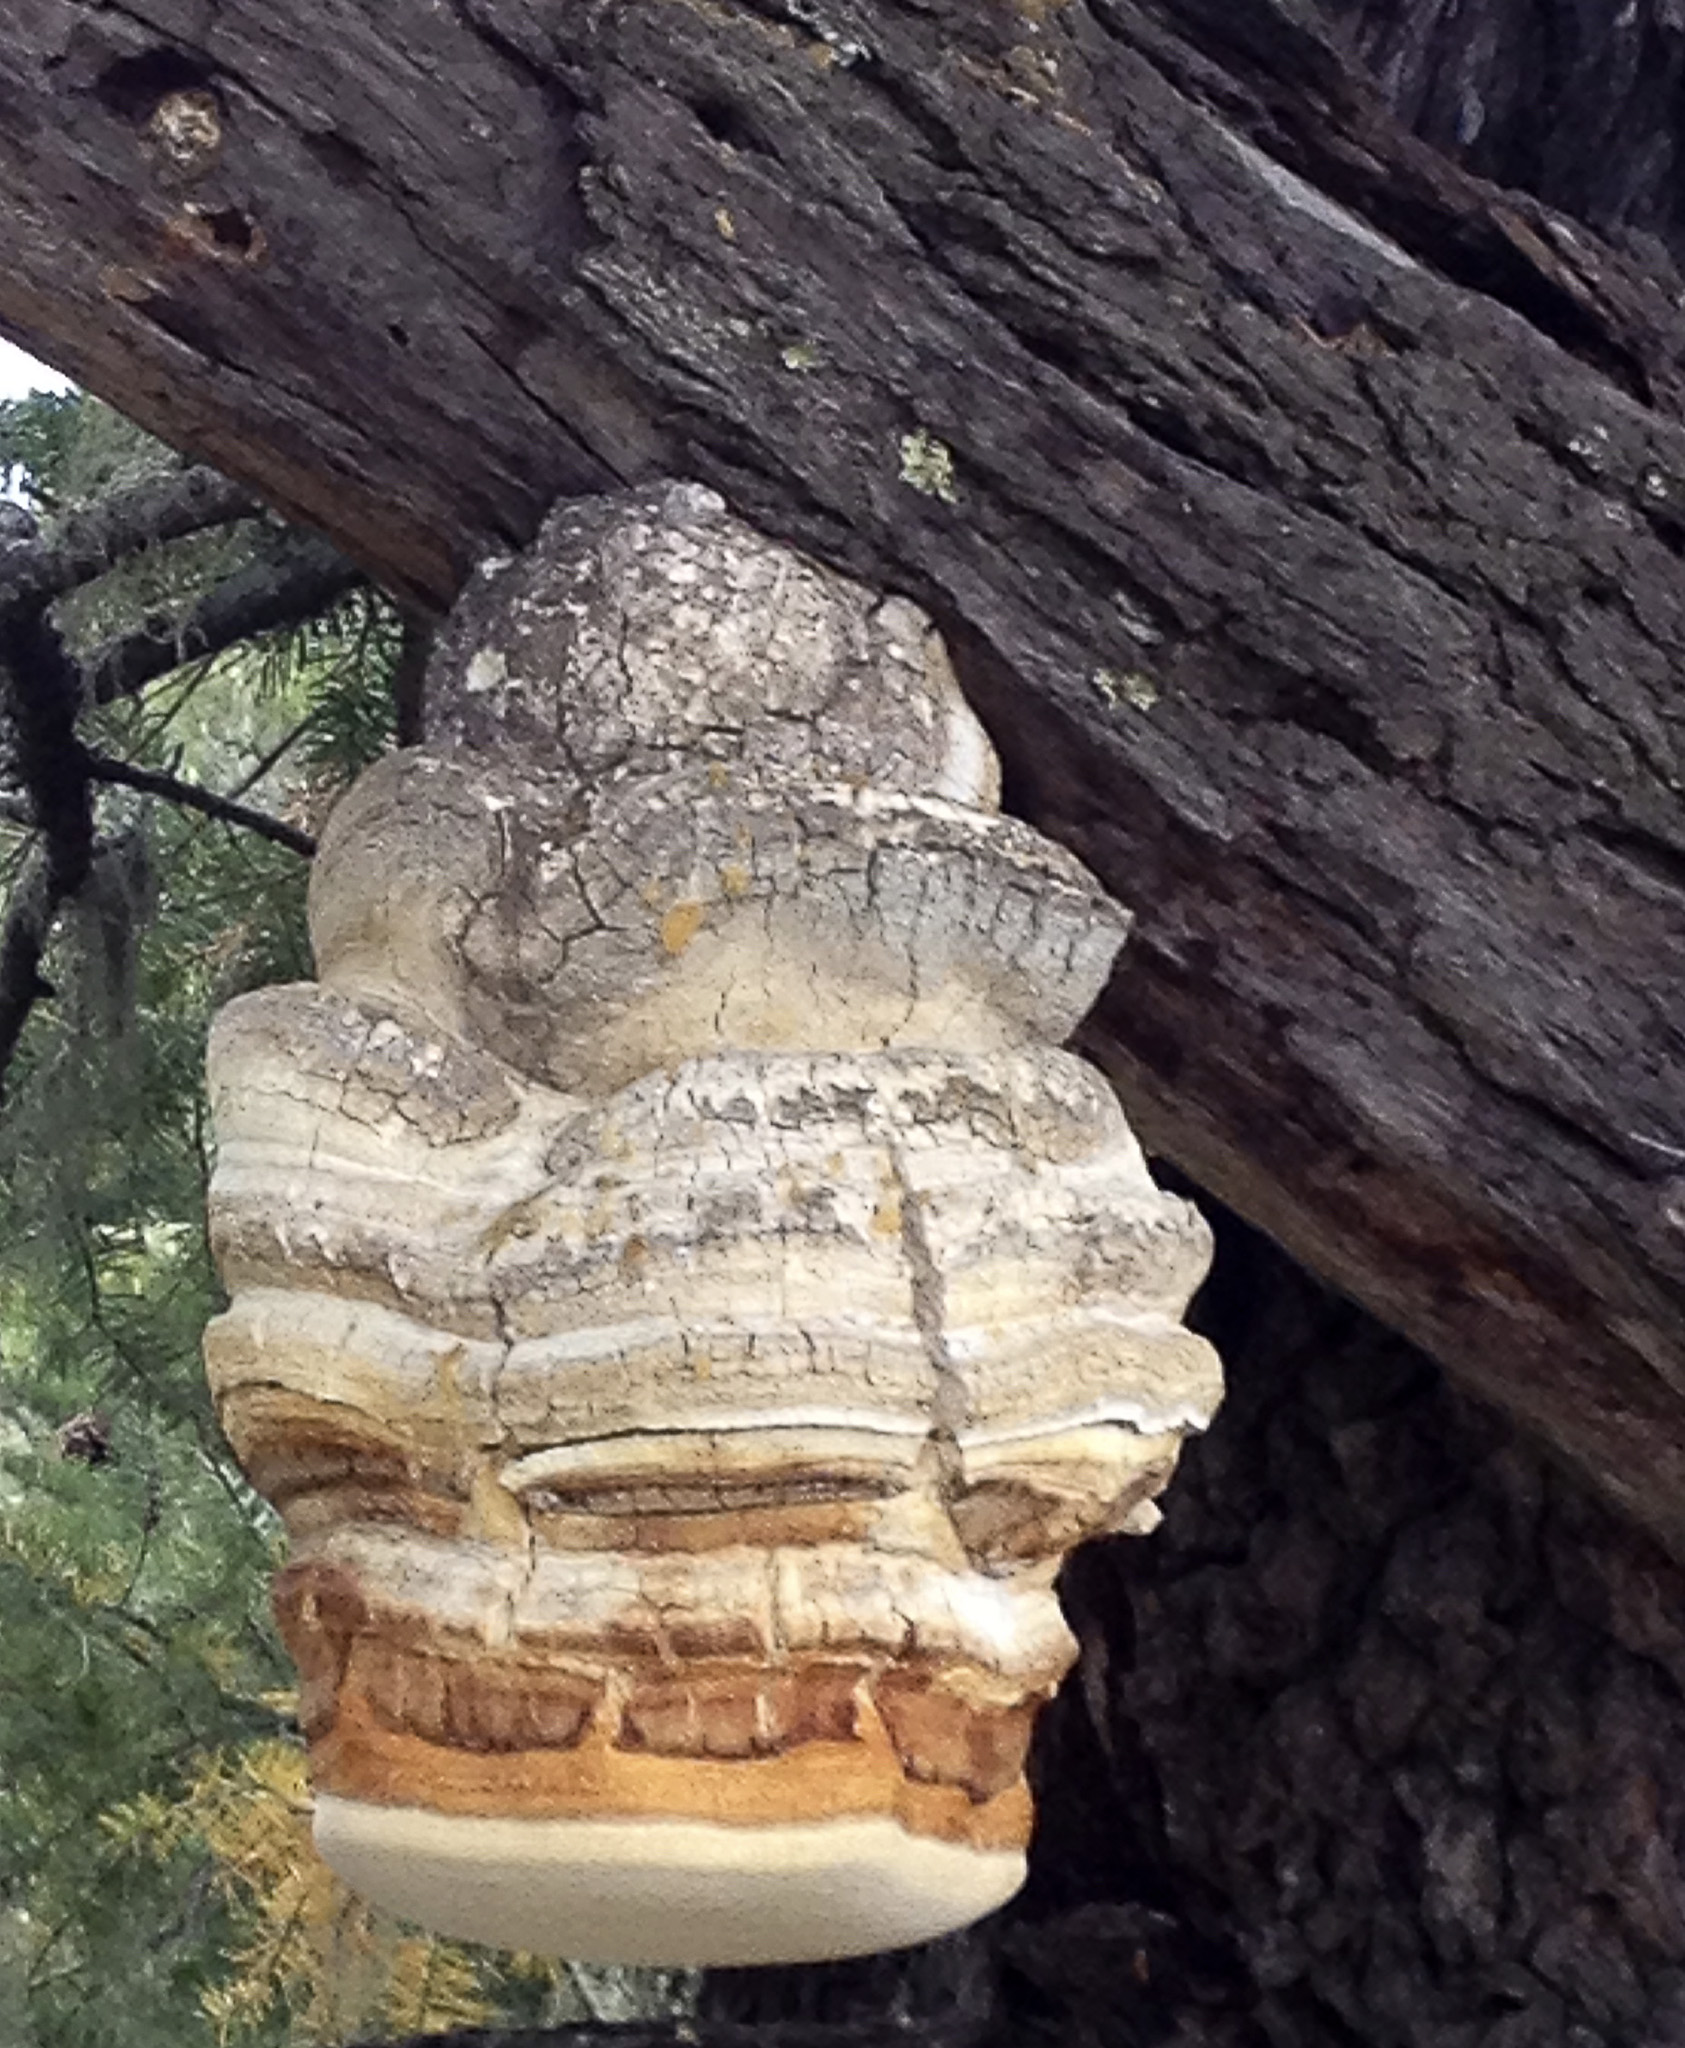 Agarikon Mushroom Growing on a Tree